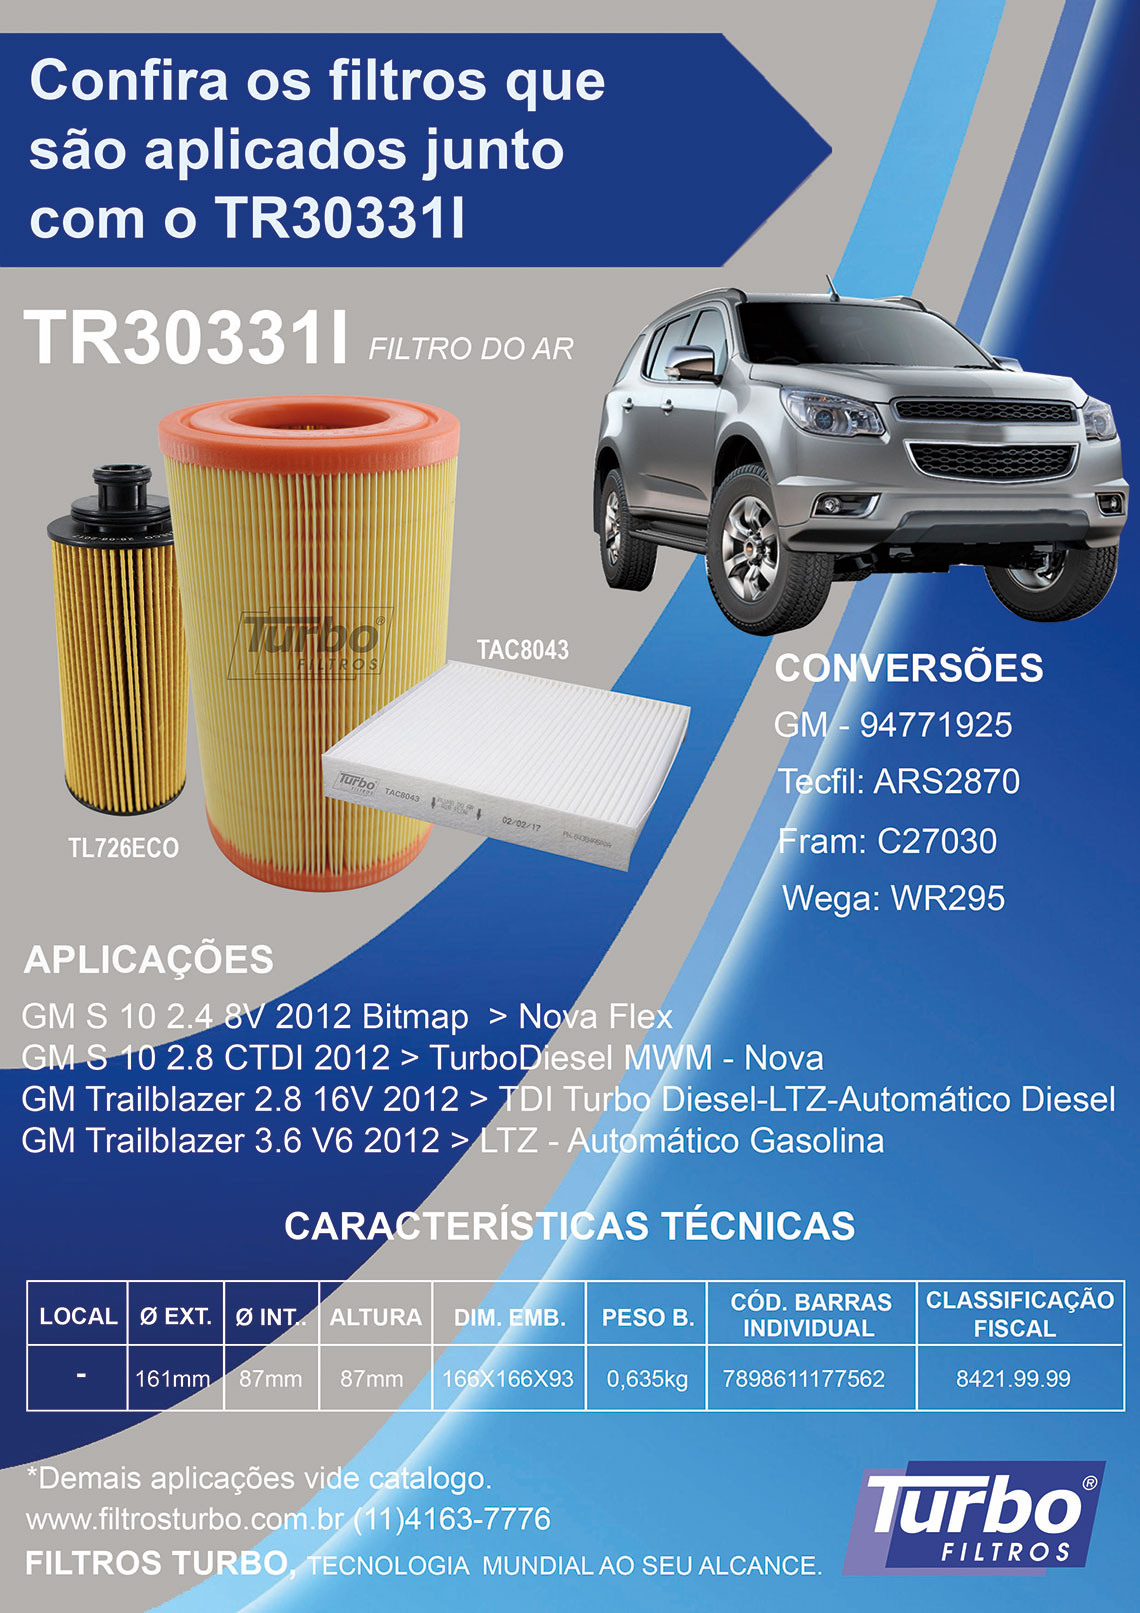 Filtros Turbo Tecnologia Mundial ao seu Alcance 